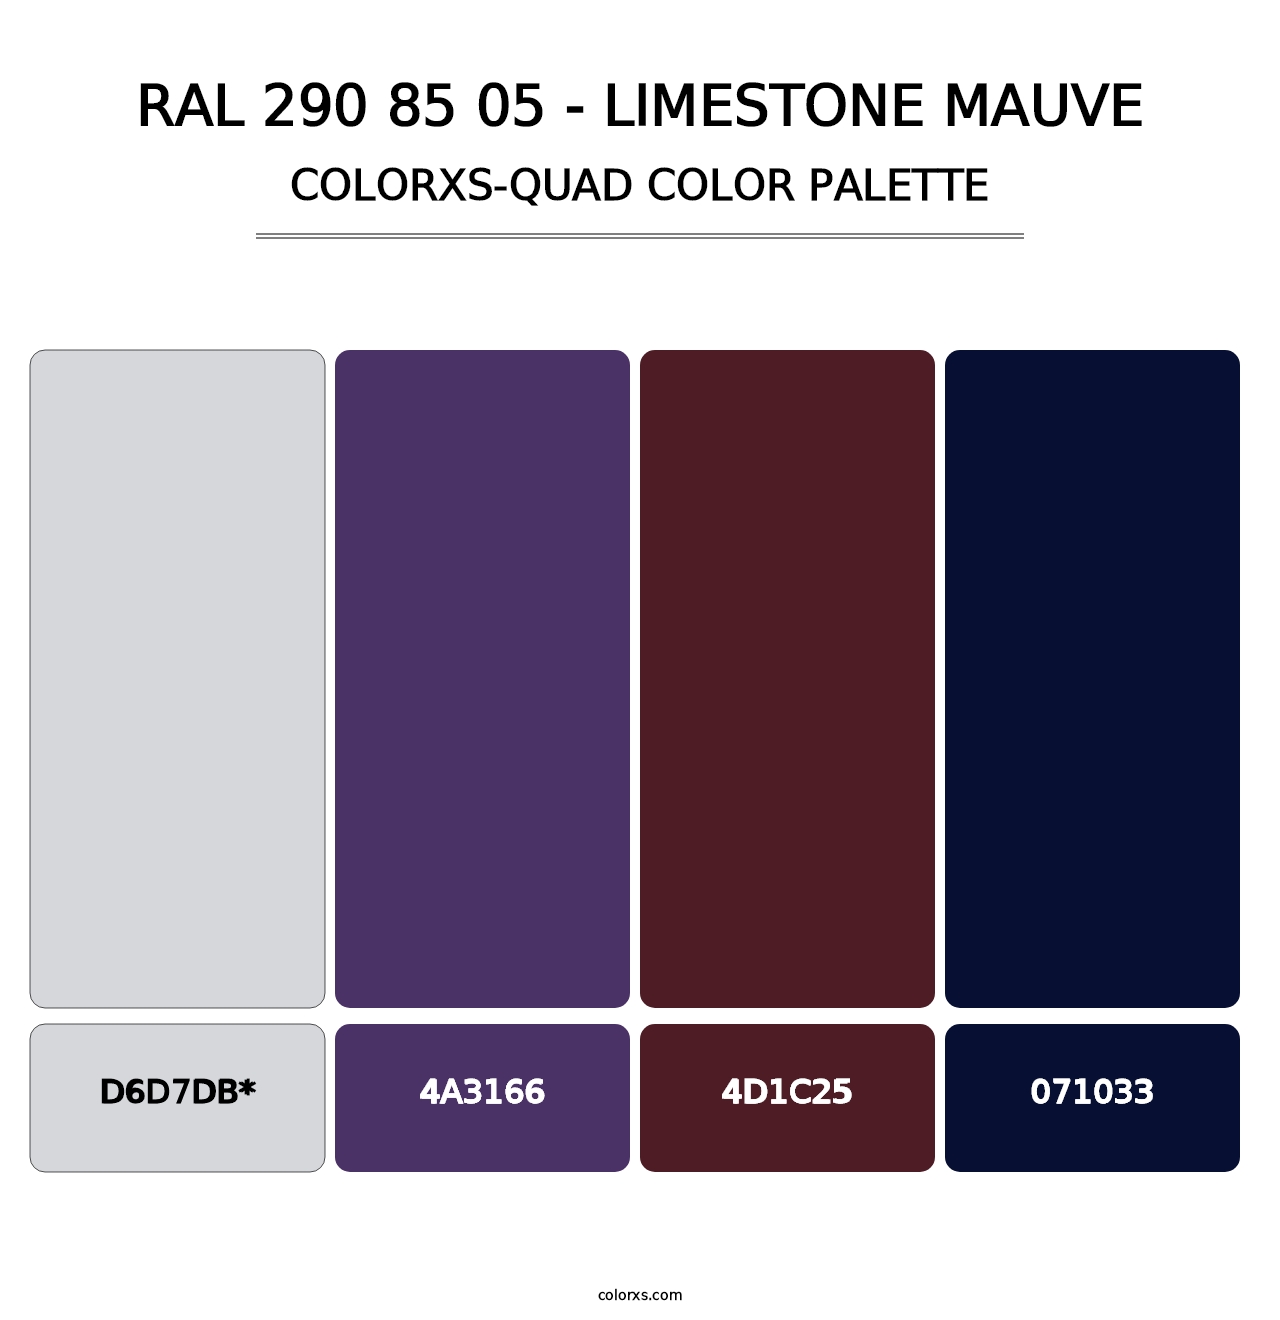 RAL 290 85 05 - Limestone Mauve - Colorxs Quad Palette